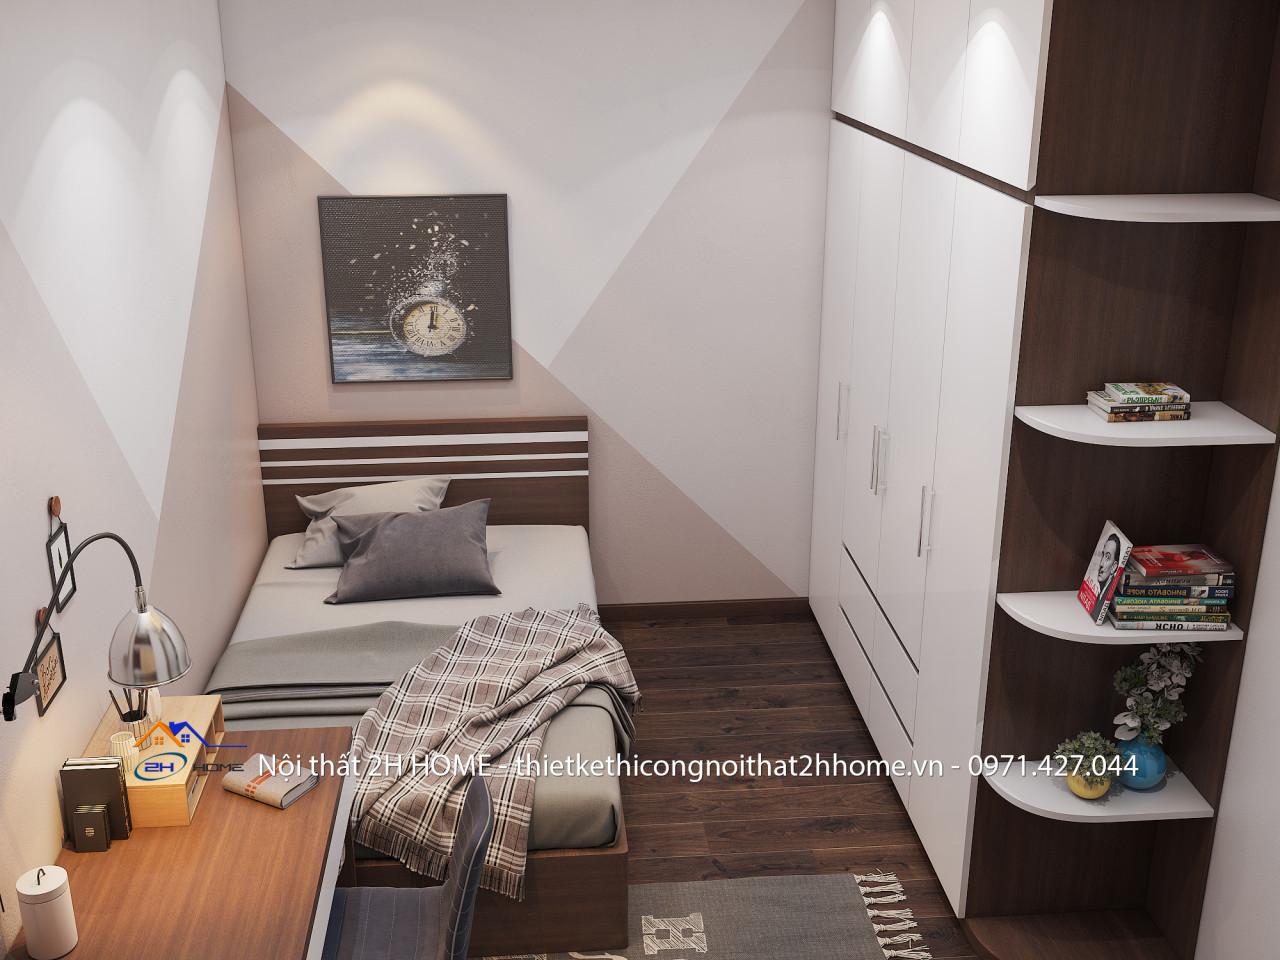 Phòng ngủ nhỏ cho khách theo phong cách đơn giản, tối ưu nội thất trong phòng